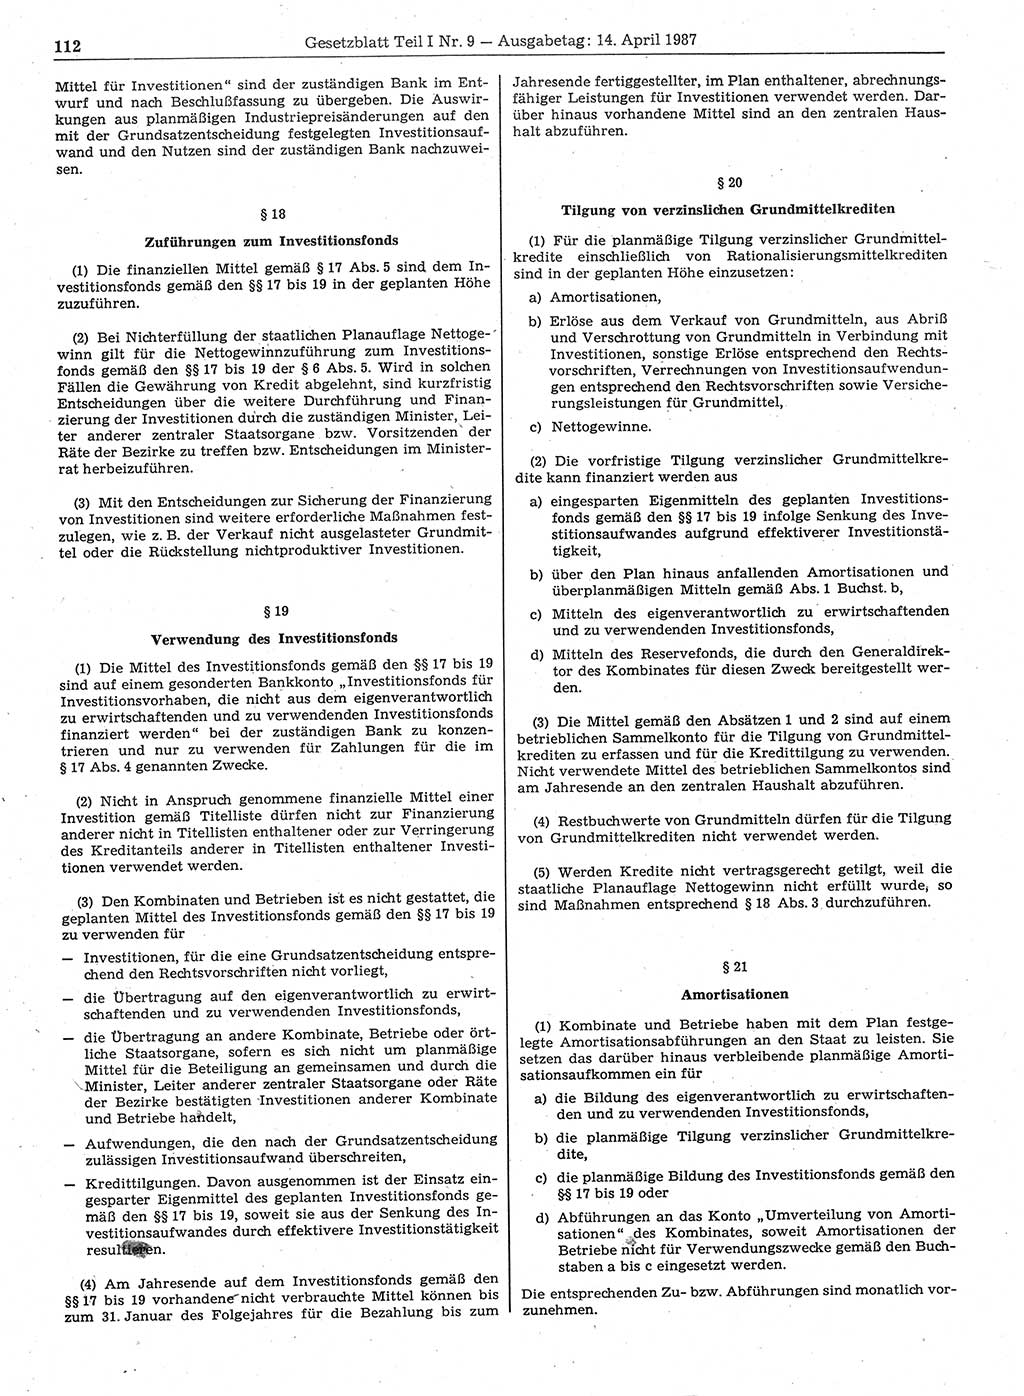 Gesetzblatt (GBl.) der Deutschen Demokratischen Republik (DDR) Teil Ⅰ 1987, Seite 112 (GBl. DDR Ⅰ 1987, S. 112)